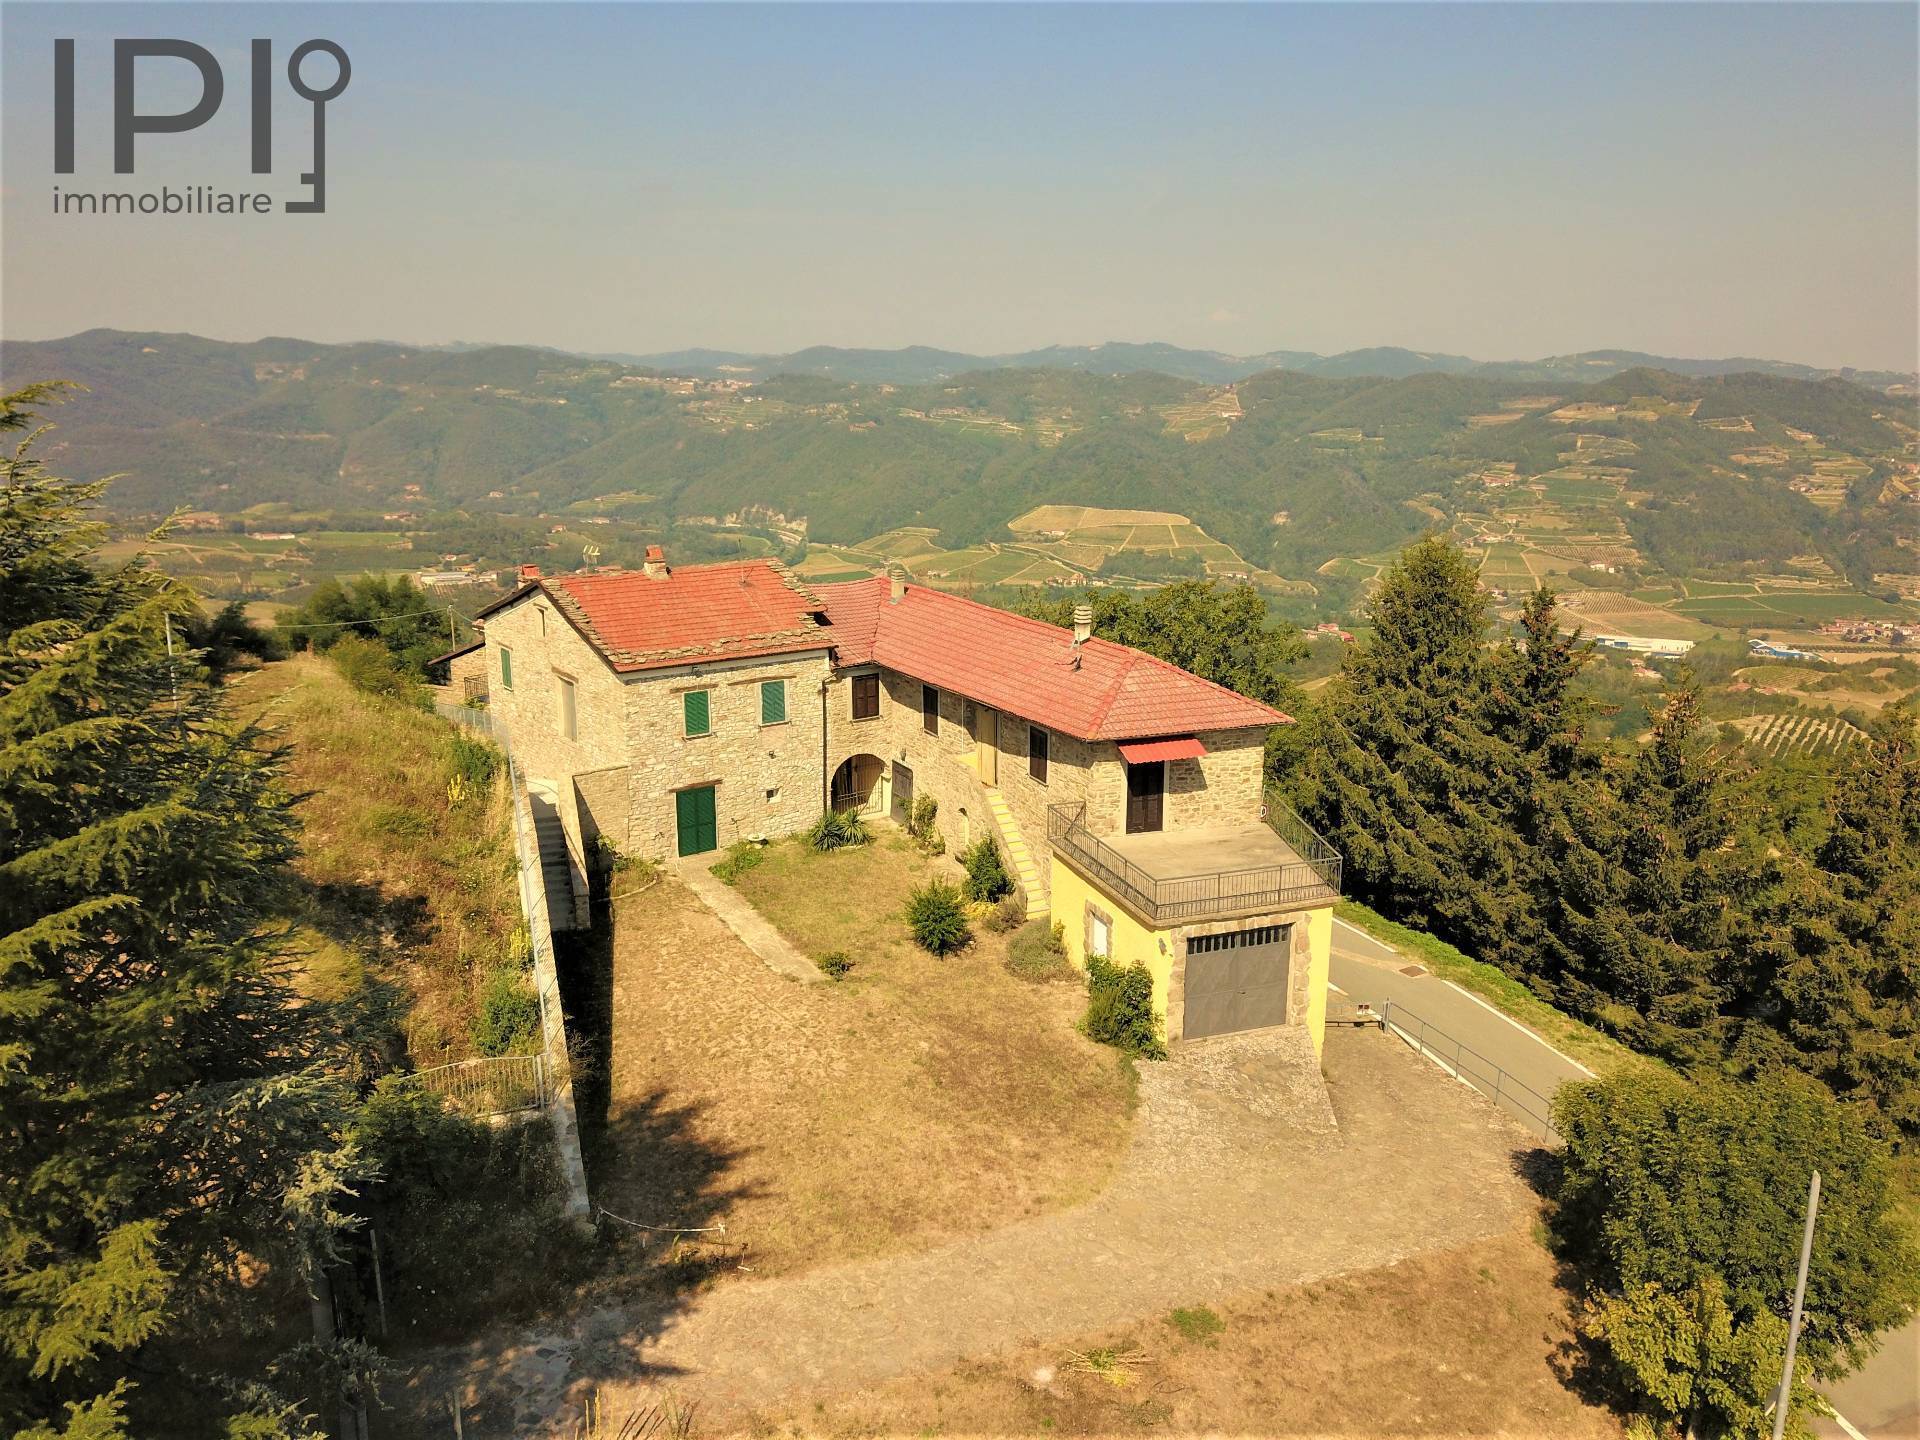 Villa in vendita a Vesime, 18 locali, prezzo € 320.000 | PortaleAgenzieImmobiliari.it